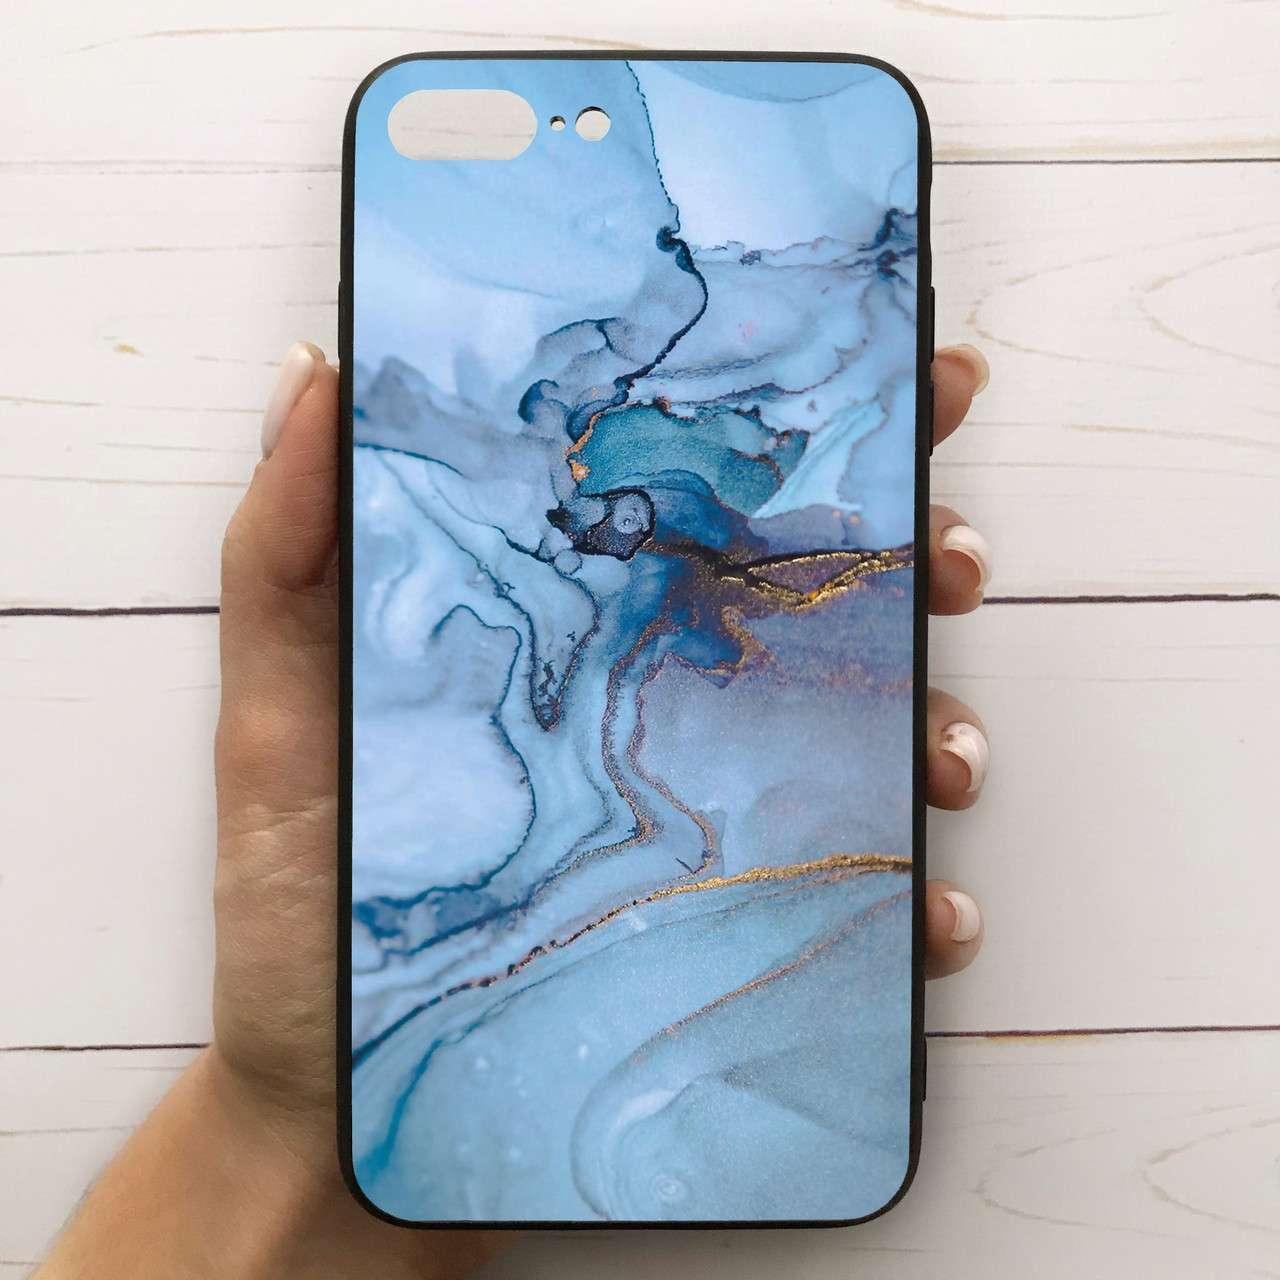 ̊ Чехол-накладка силиконовый для Apple iPhone 7 Plus / 8 Plus с рисунком принтом Мрамор голубой M-287268, Разные цвета